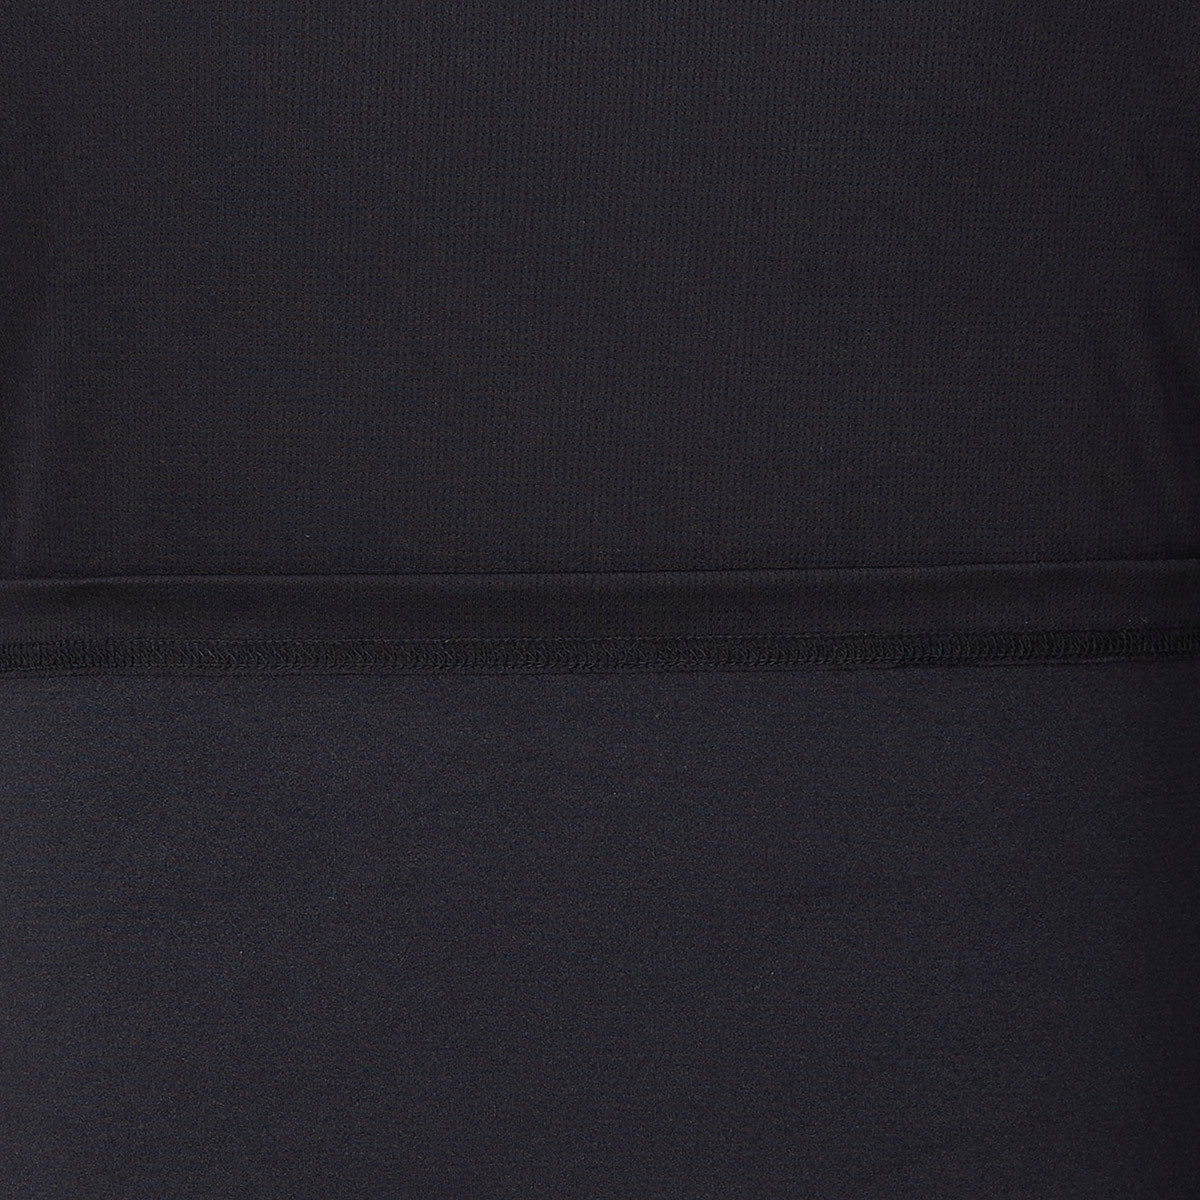 컬럼비아 남성 반소매 티셔츠 - 블랙, XL